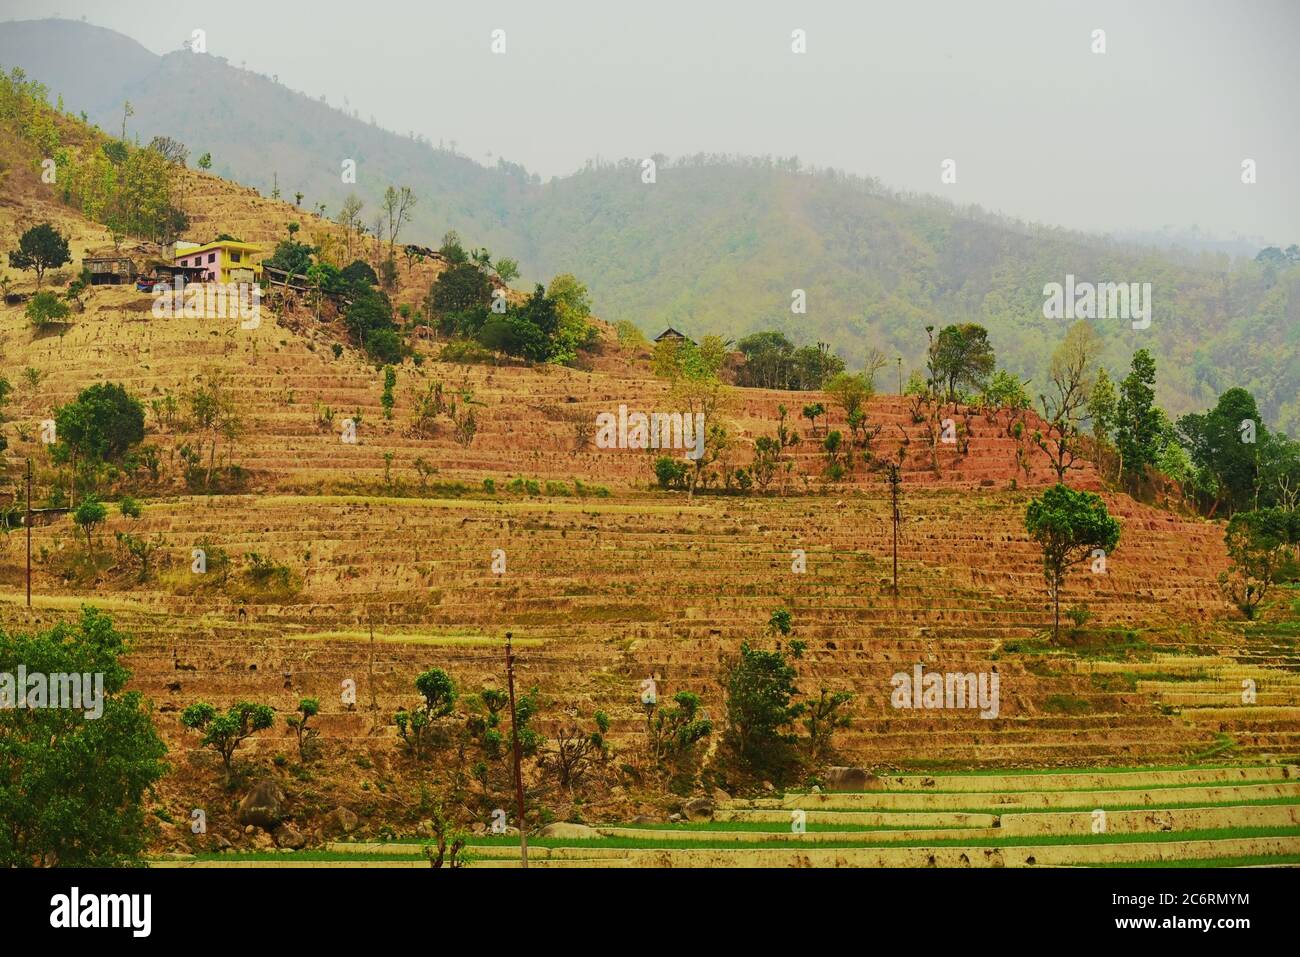 Champs agricoles secs du Népal, vus d'une route reliant les provinces de Gandaki Pradesh et Bagmati Pradesh. Banque D'Images